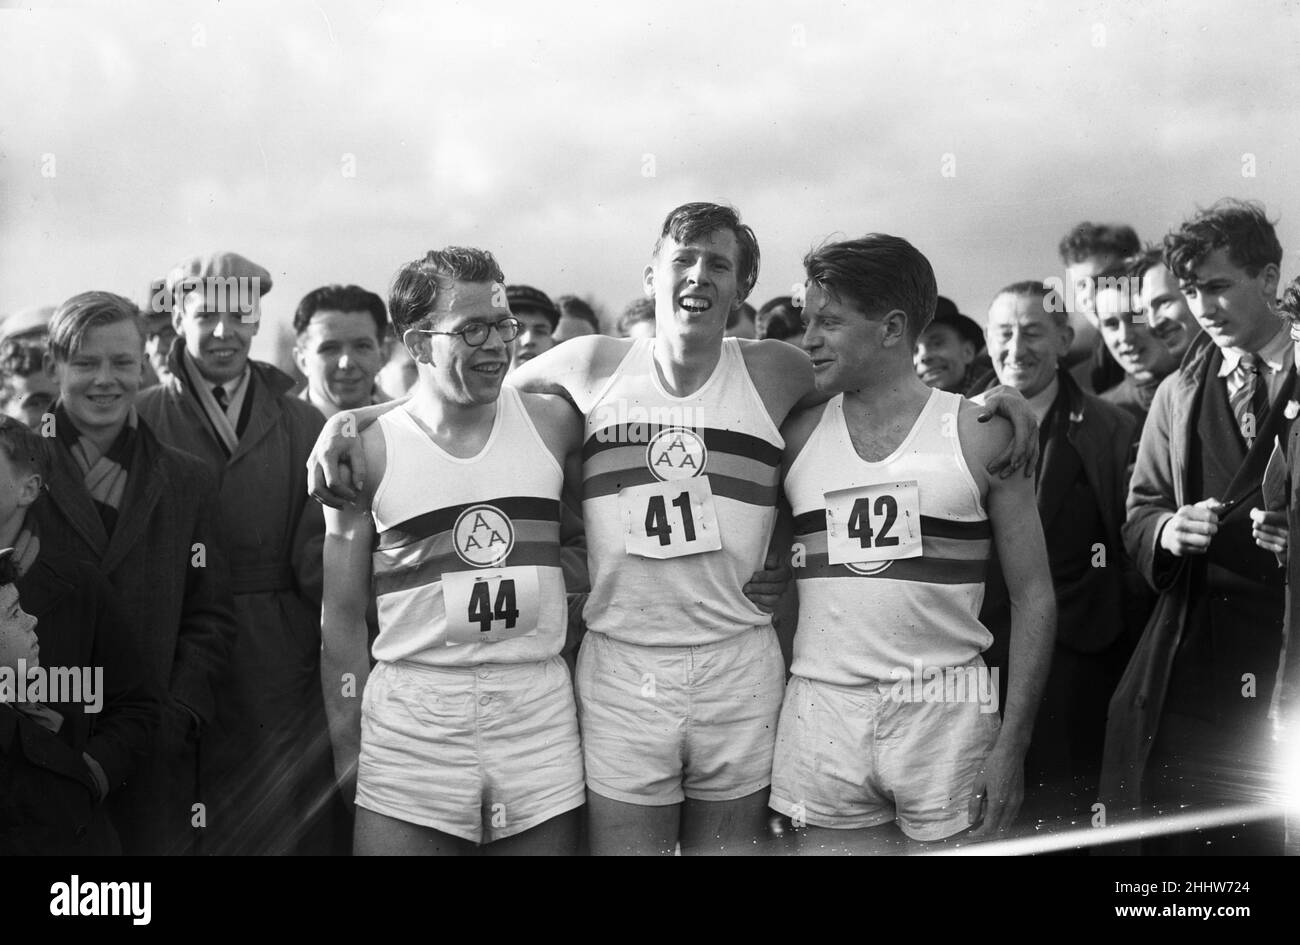 Roger Banister, britischer Athlet, fährt am Donnerstag, den 6th. Mai 1954, die erste Strecke unter 4 Minuten auf der Iffley Road Track in Oxford. Die genaue Zeit betrug 3 Minuten 59,4 Sekunden. Unser Bild zeigt Roger Bister, den sein Pace-Setter Chris Brasher (Nr. 44) und Chris Chataway (Nr. L 42, S. Stockfoto